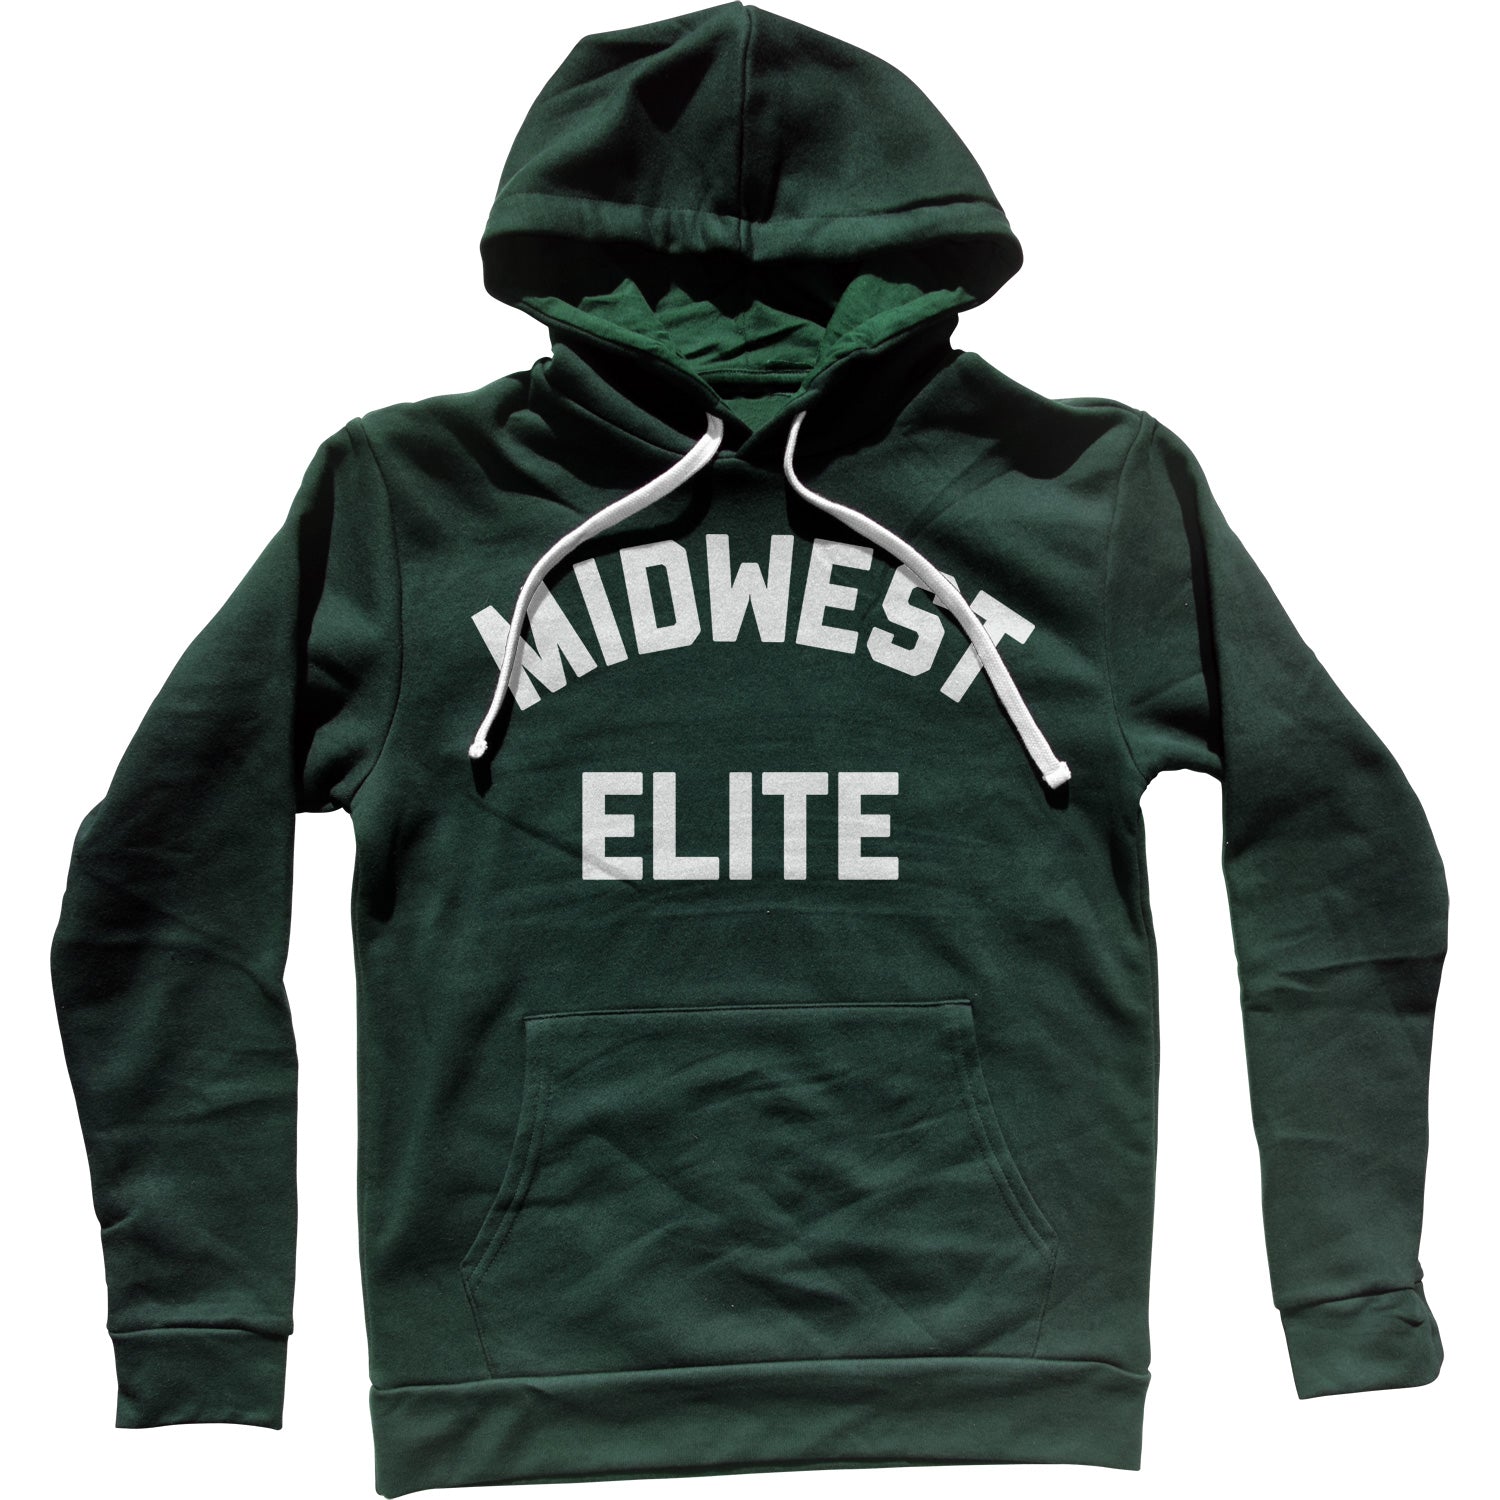 Midwest Elite Unisex Hoodie